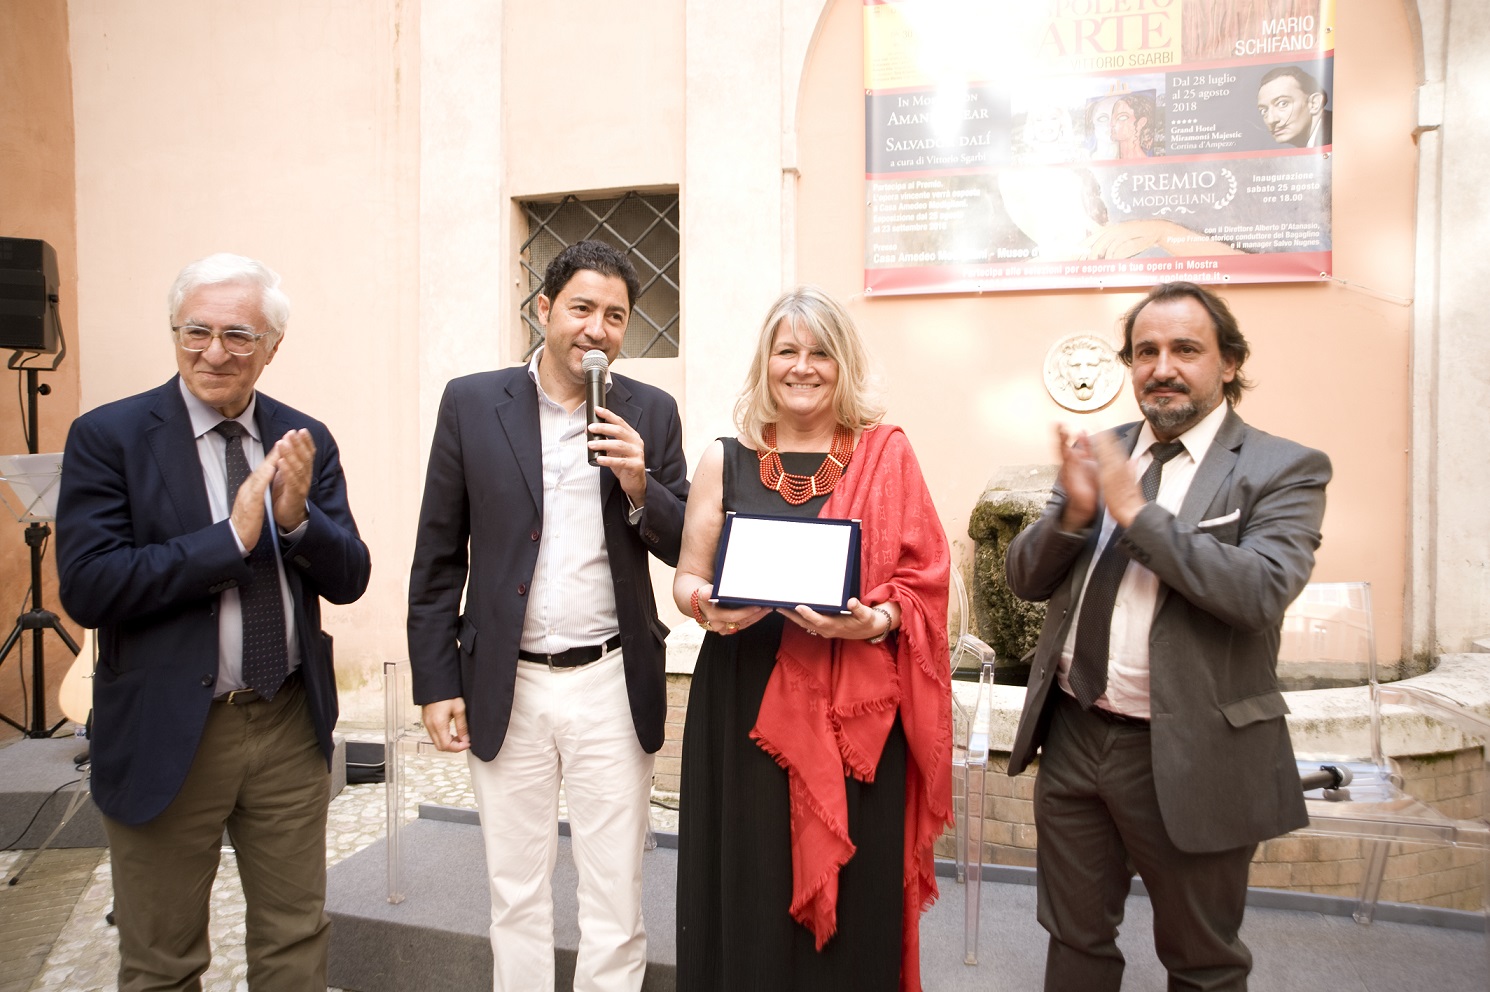 Foto 4 - Le meraviglie della città lagunare con Rina Del Bono a Spoleto Arte incontra Venezia 